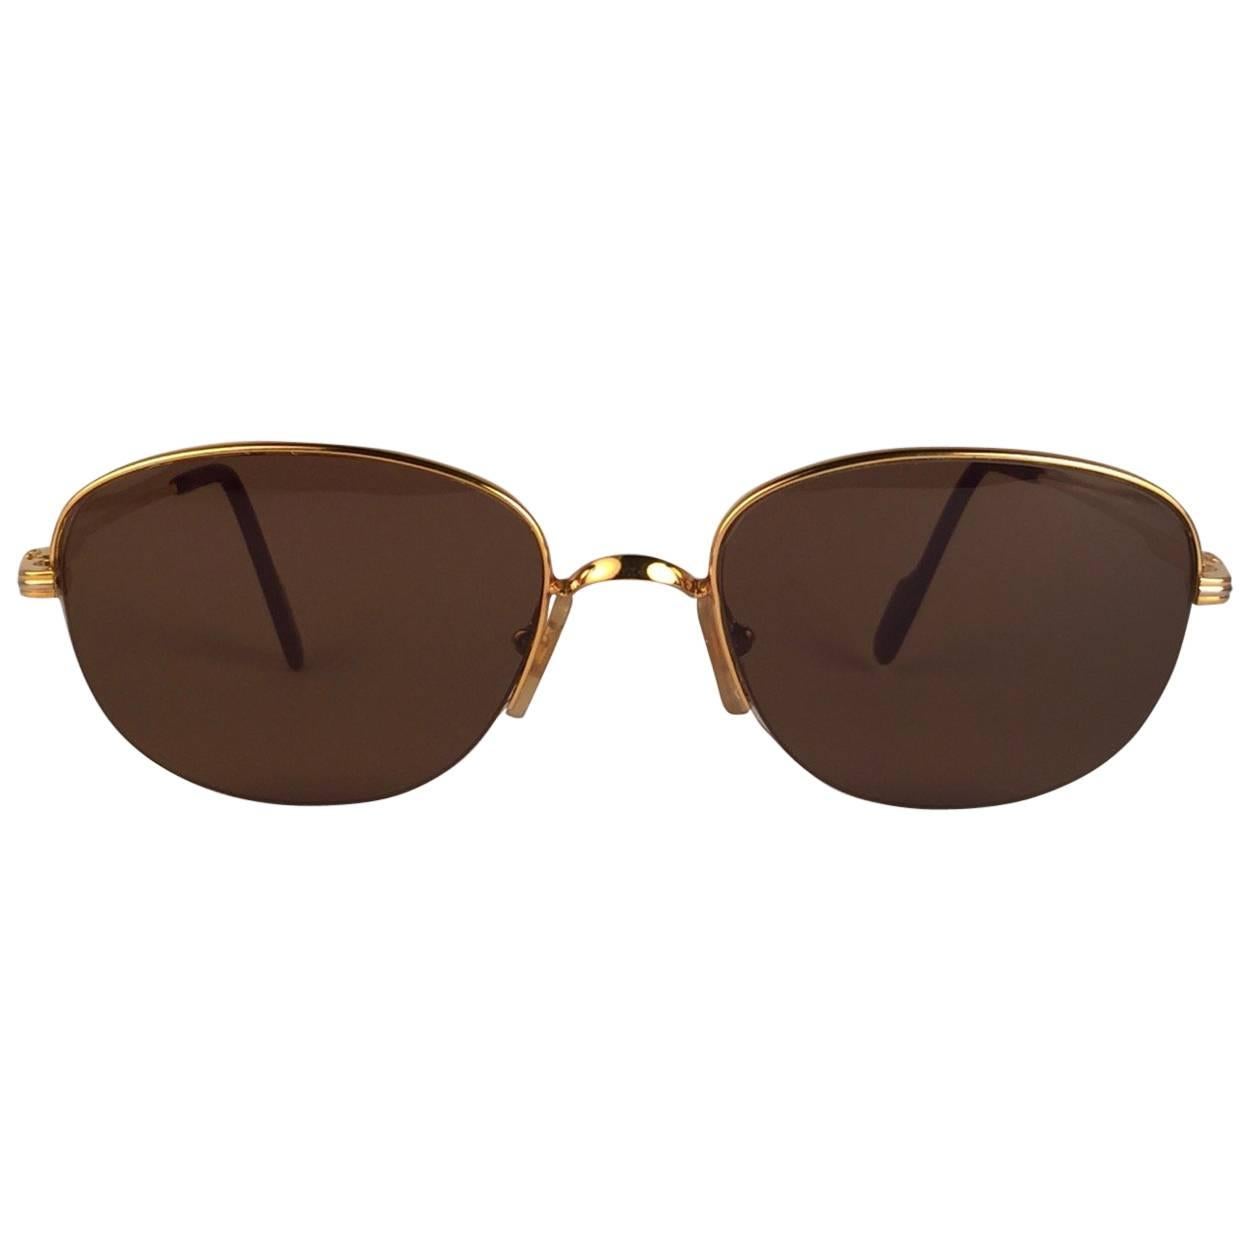 Neu 1983 Cartier Montaigne Vendome Sonnenbrille mit braunen (UV-Schutz) Gläsern. Der Rahmen ist mit der Vorderseite und den Seiten in Gelb- und Weißgold. Alle Markenzeichen. Cartier-Goldzeichen auf den Ohrpolstern. Mit der Fassung aus 18 Karat Gold